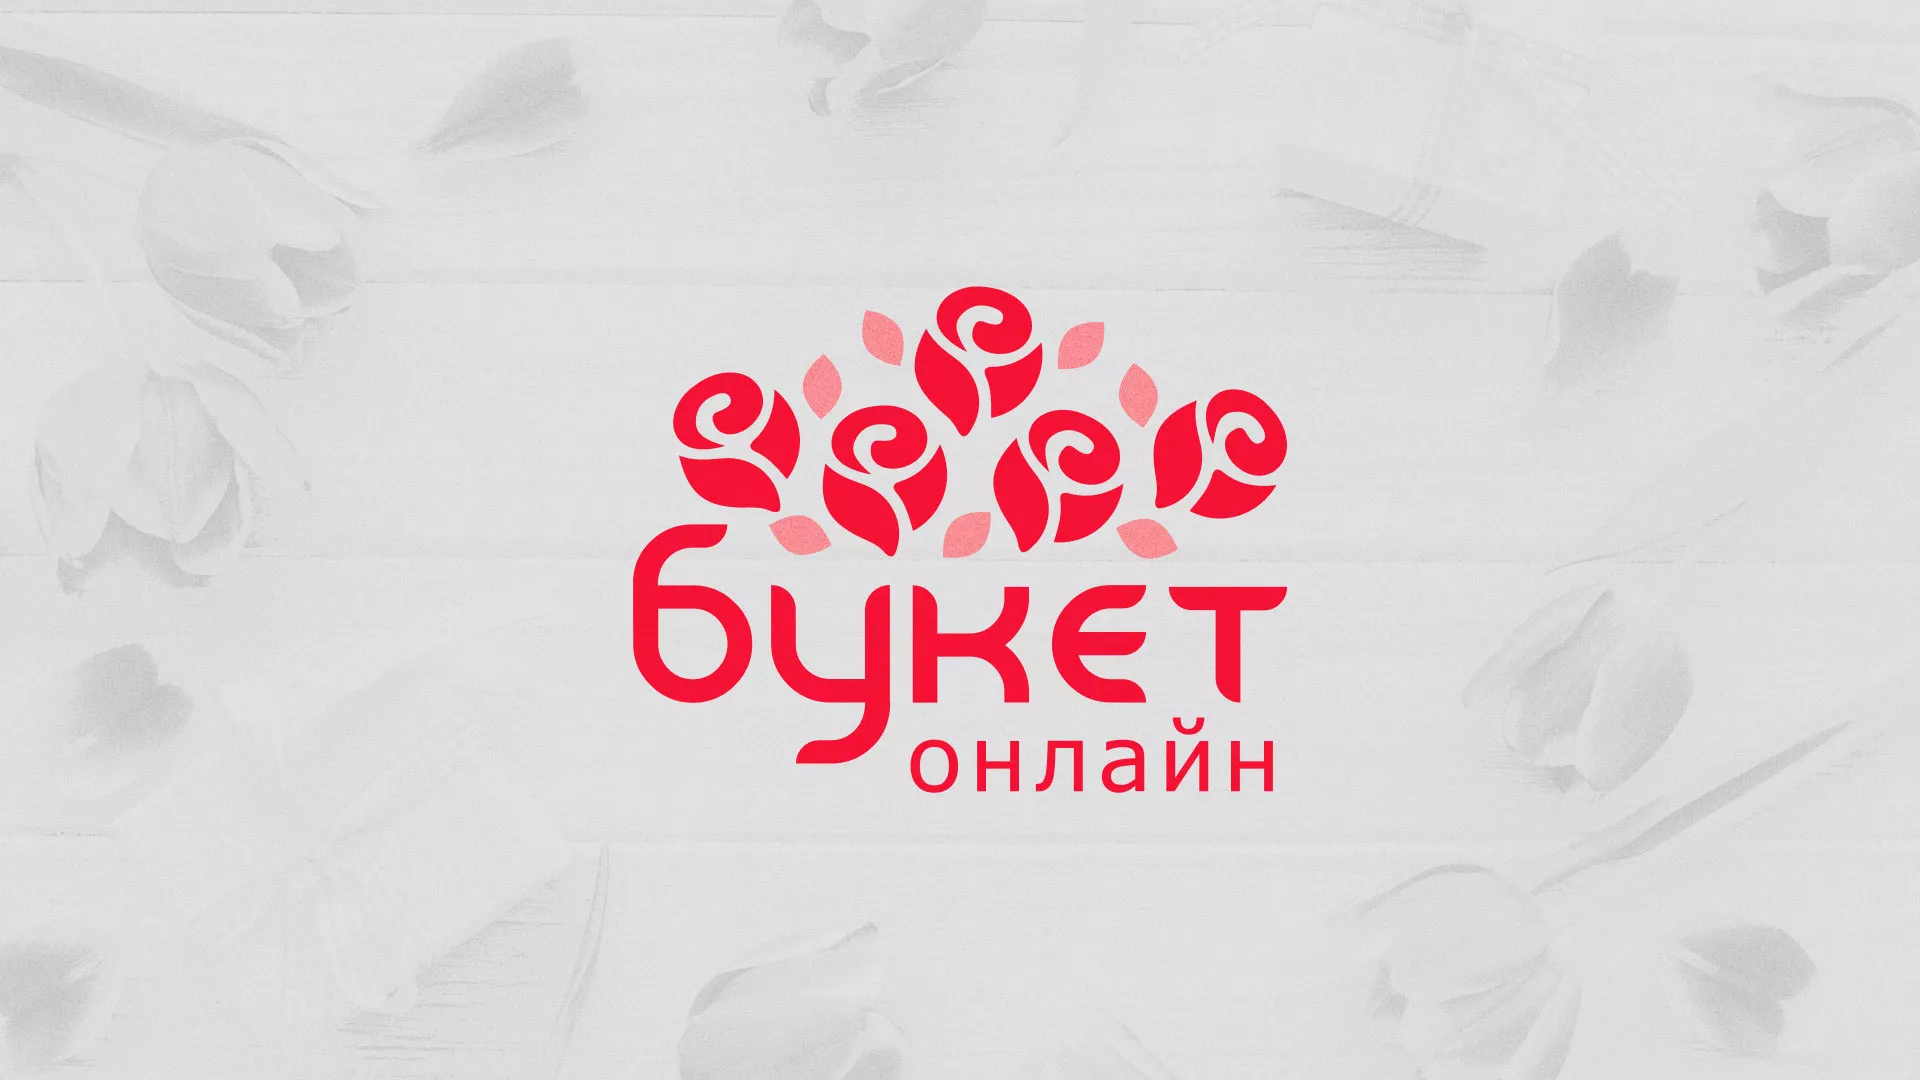 Создание интернет-магазина «Букет-онлайн» по цветам в Братске